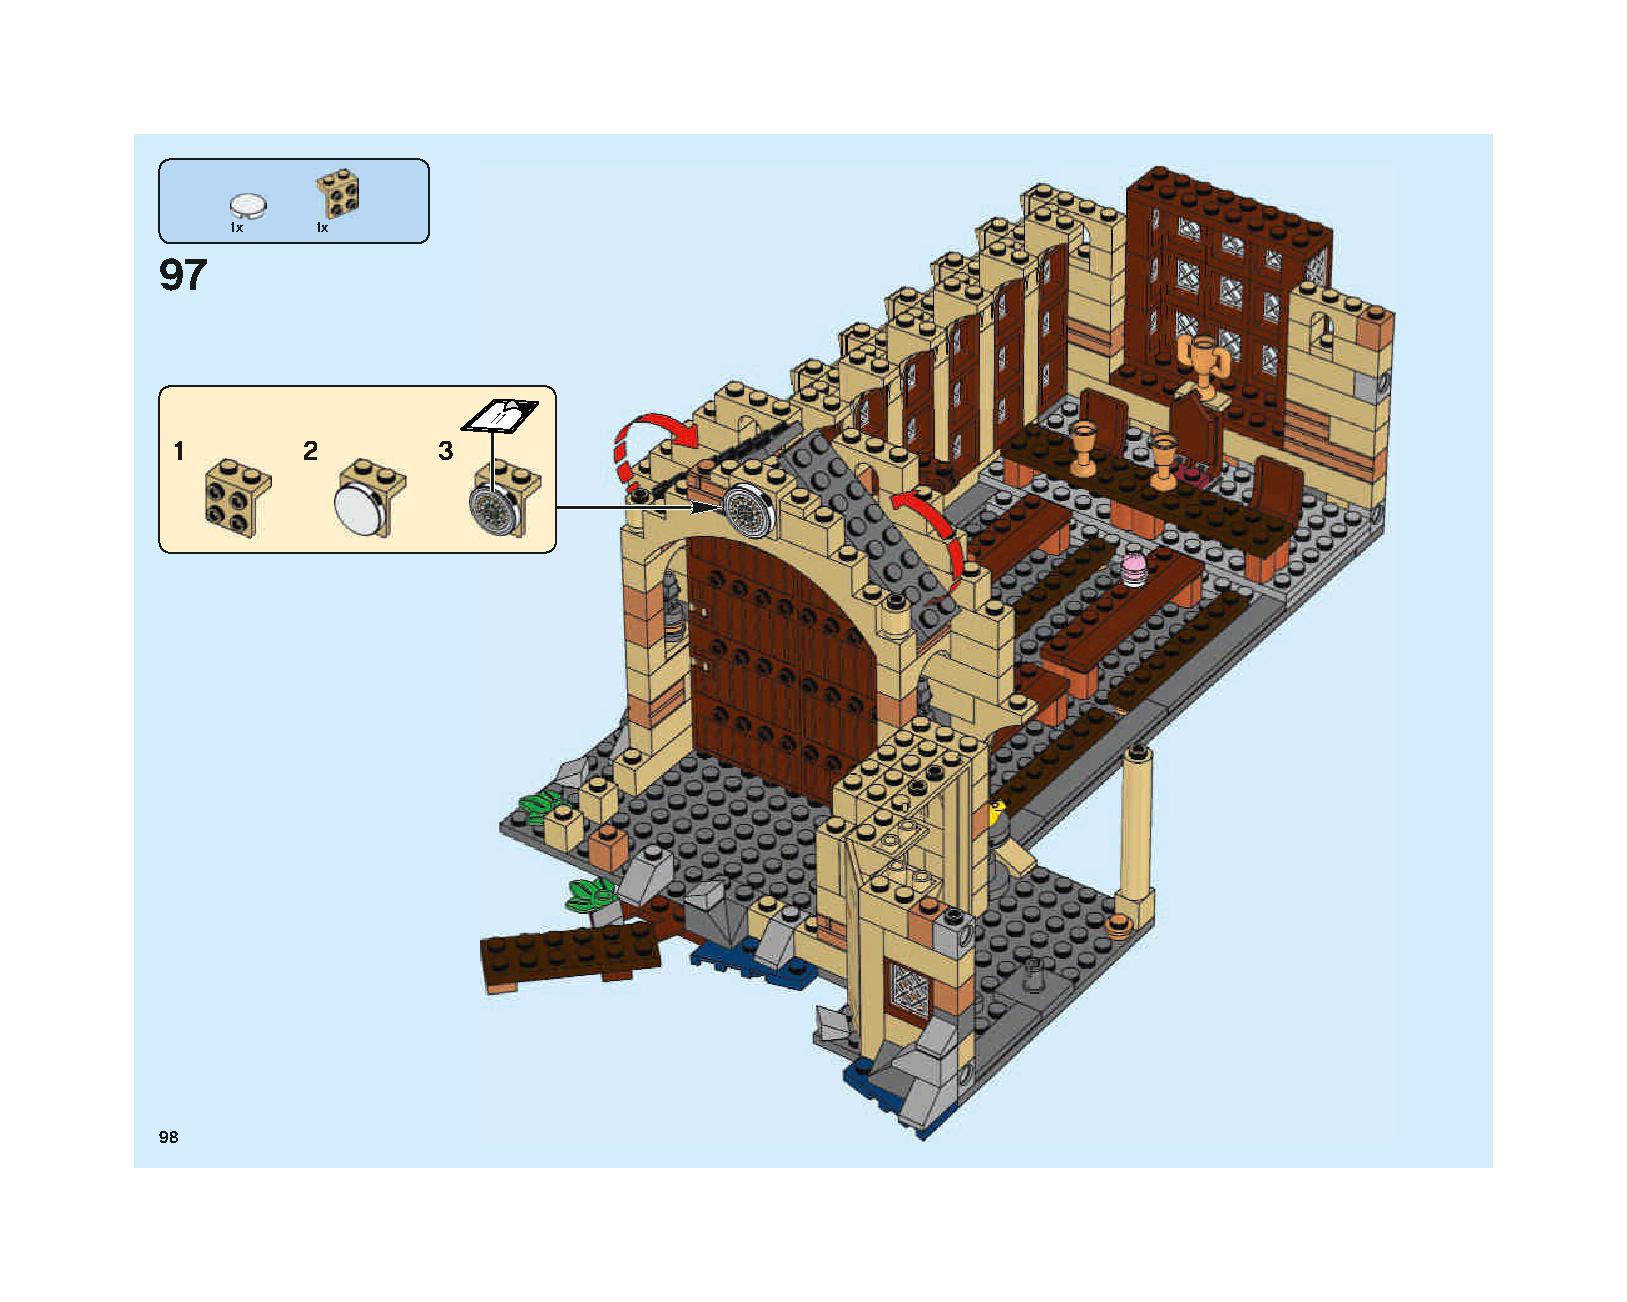 ホグワーツの大広間 75954 レゴの商品情報 レゴの説明書・組立方法 98 page